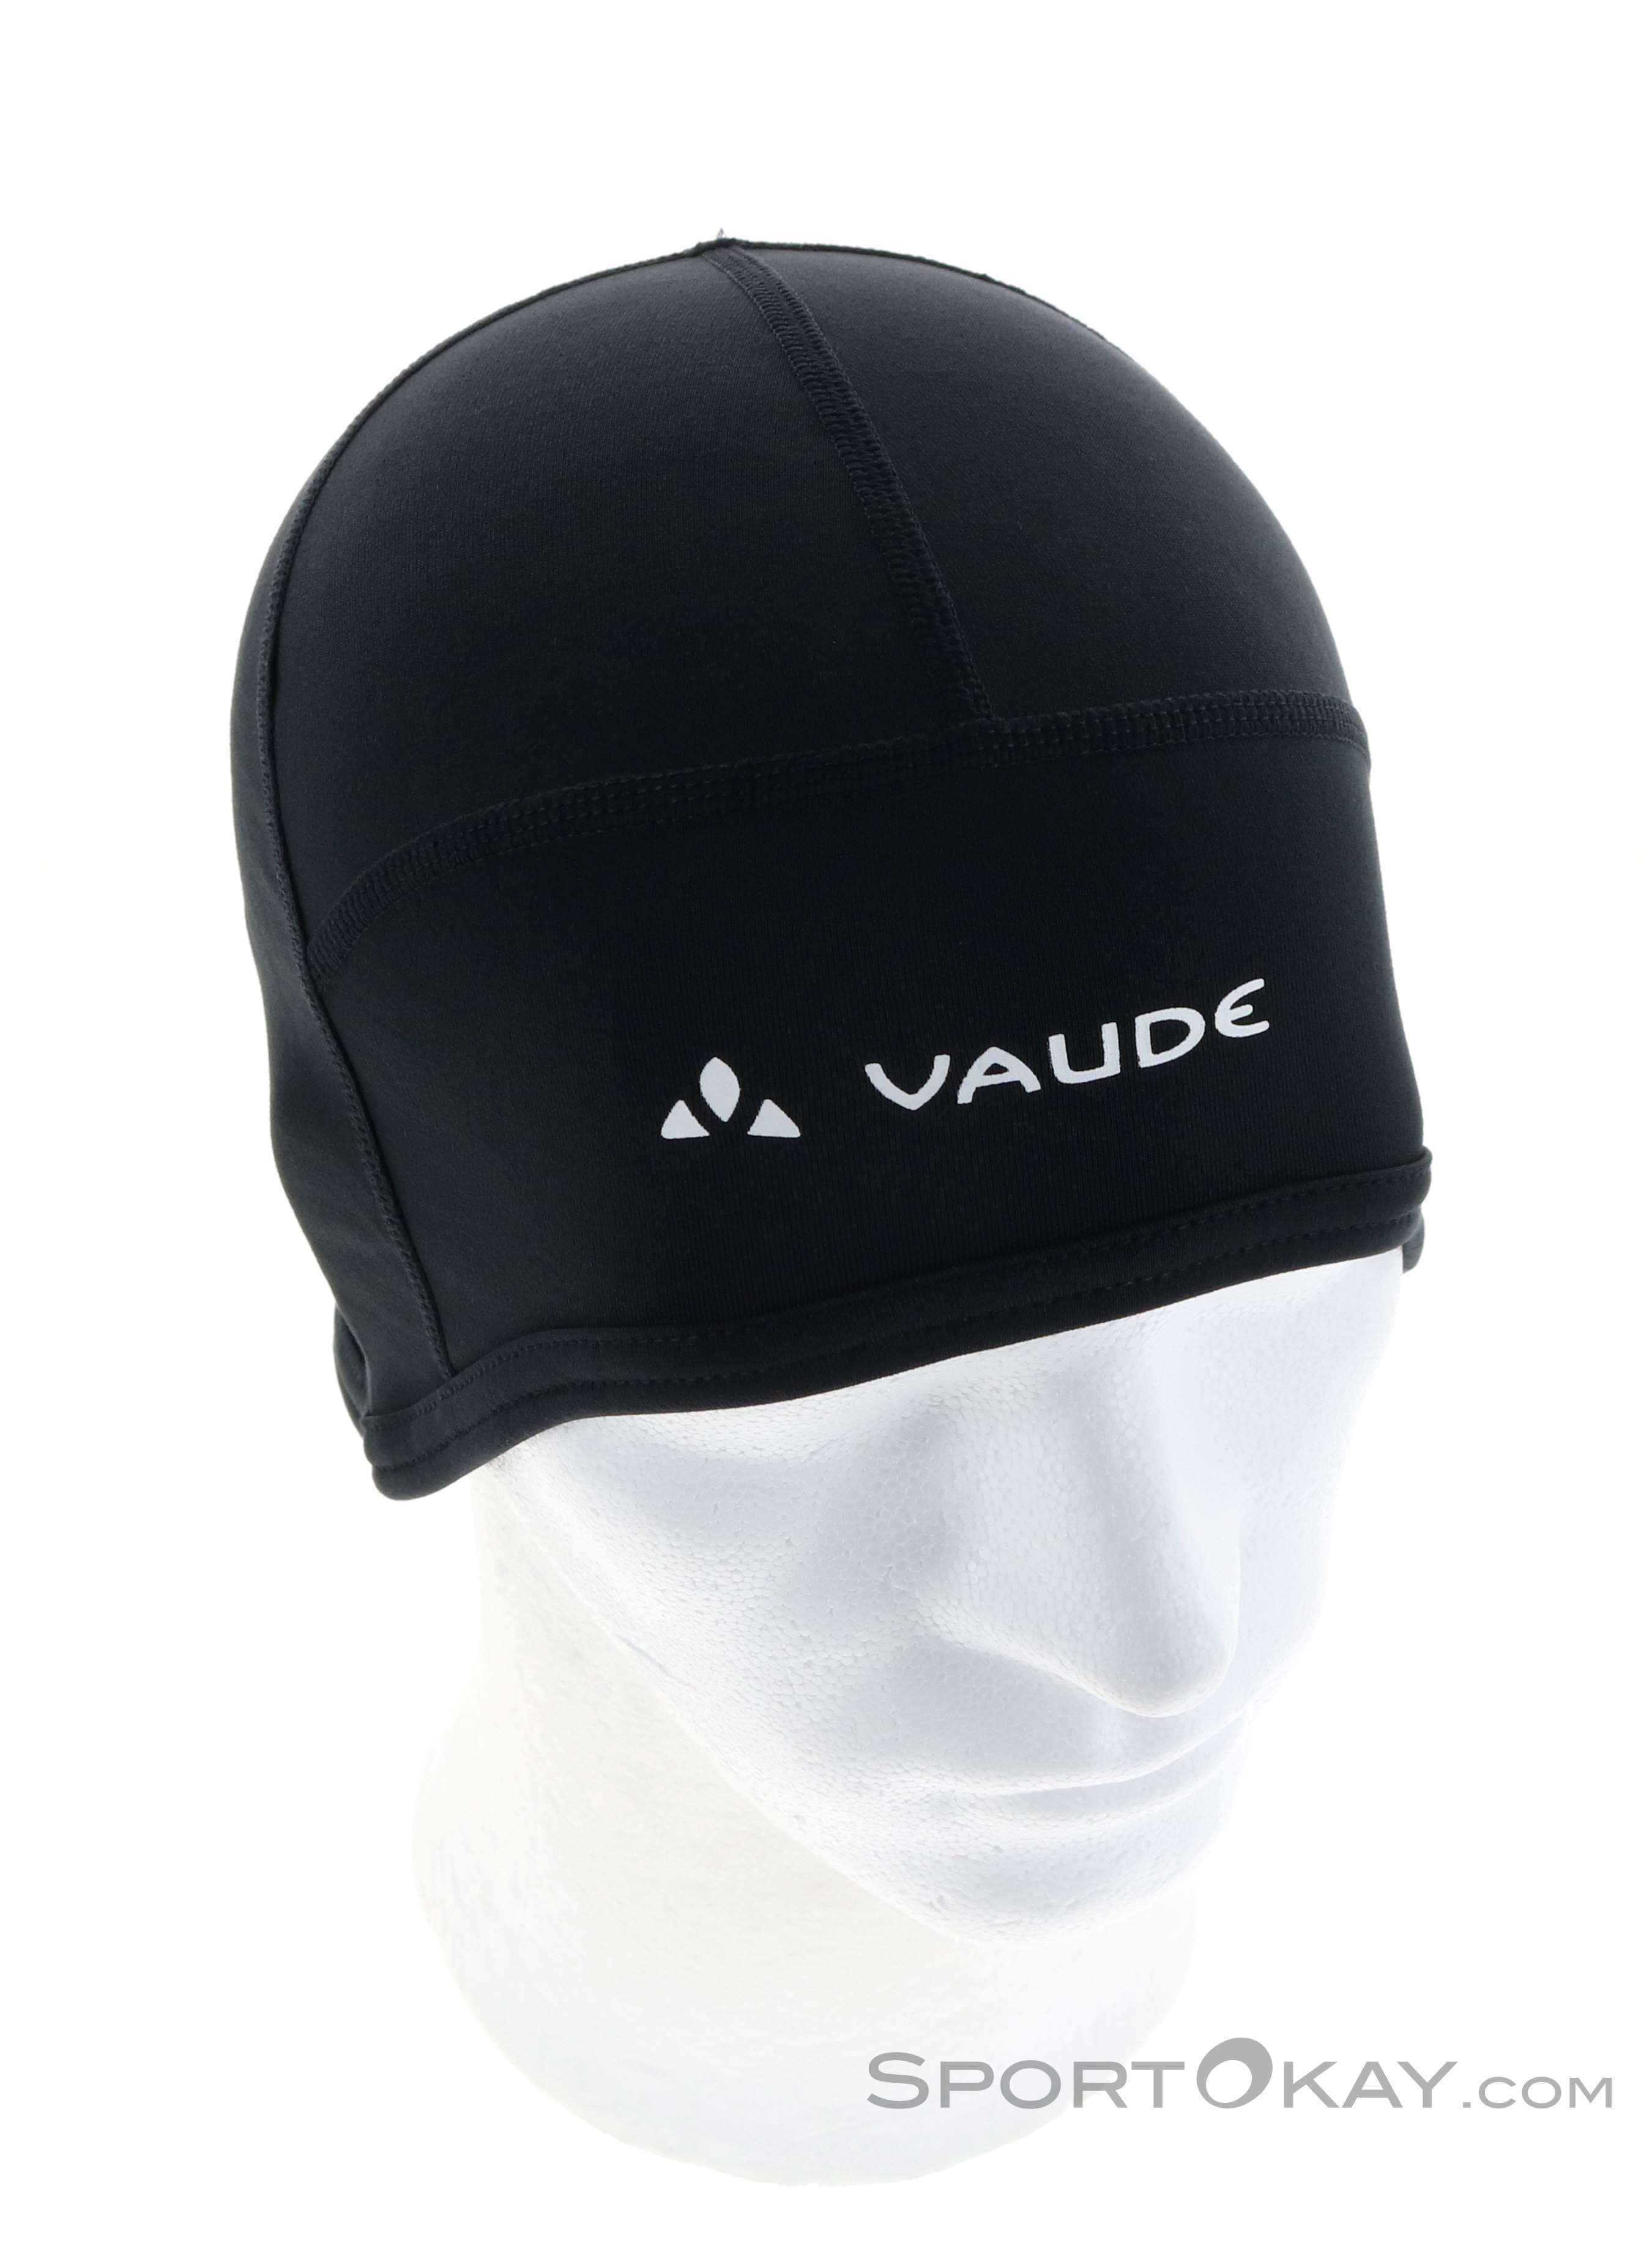 Vaude Bike Warm Beanie Outdoor Headbands - - Outdoor Caps - - Clothing & All